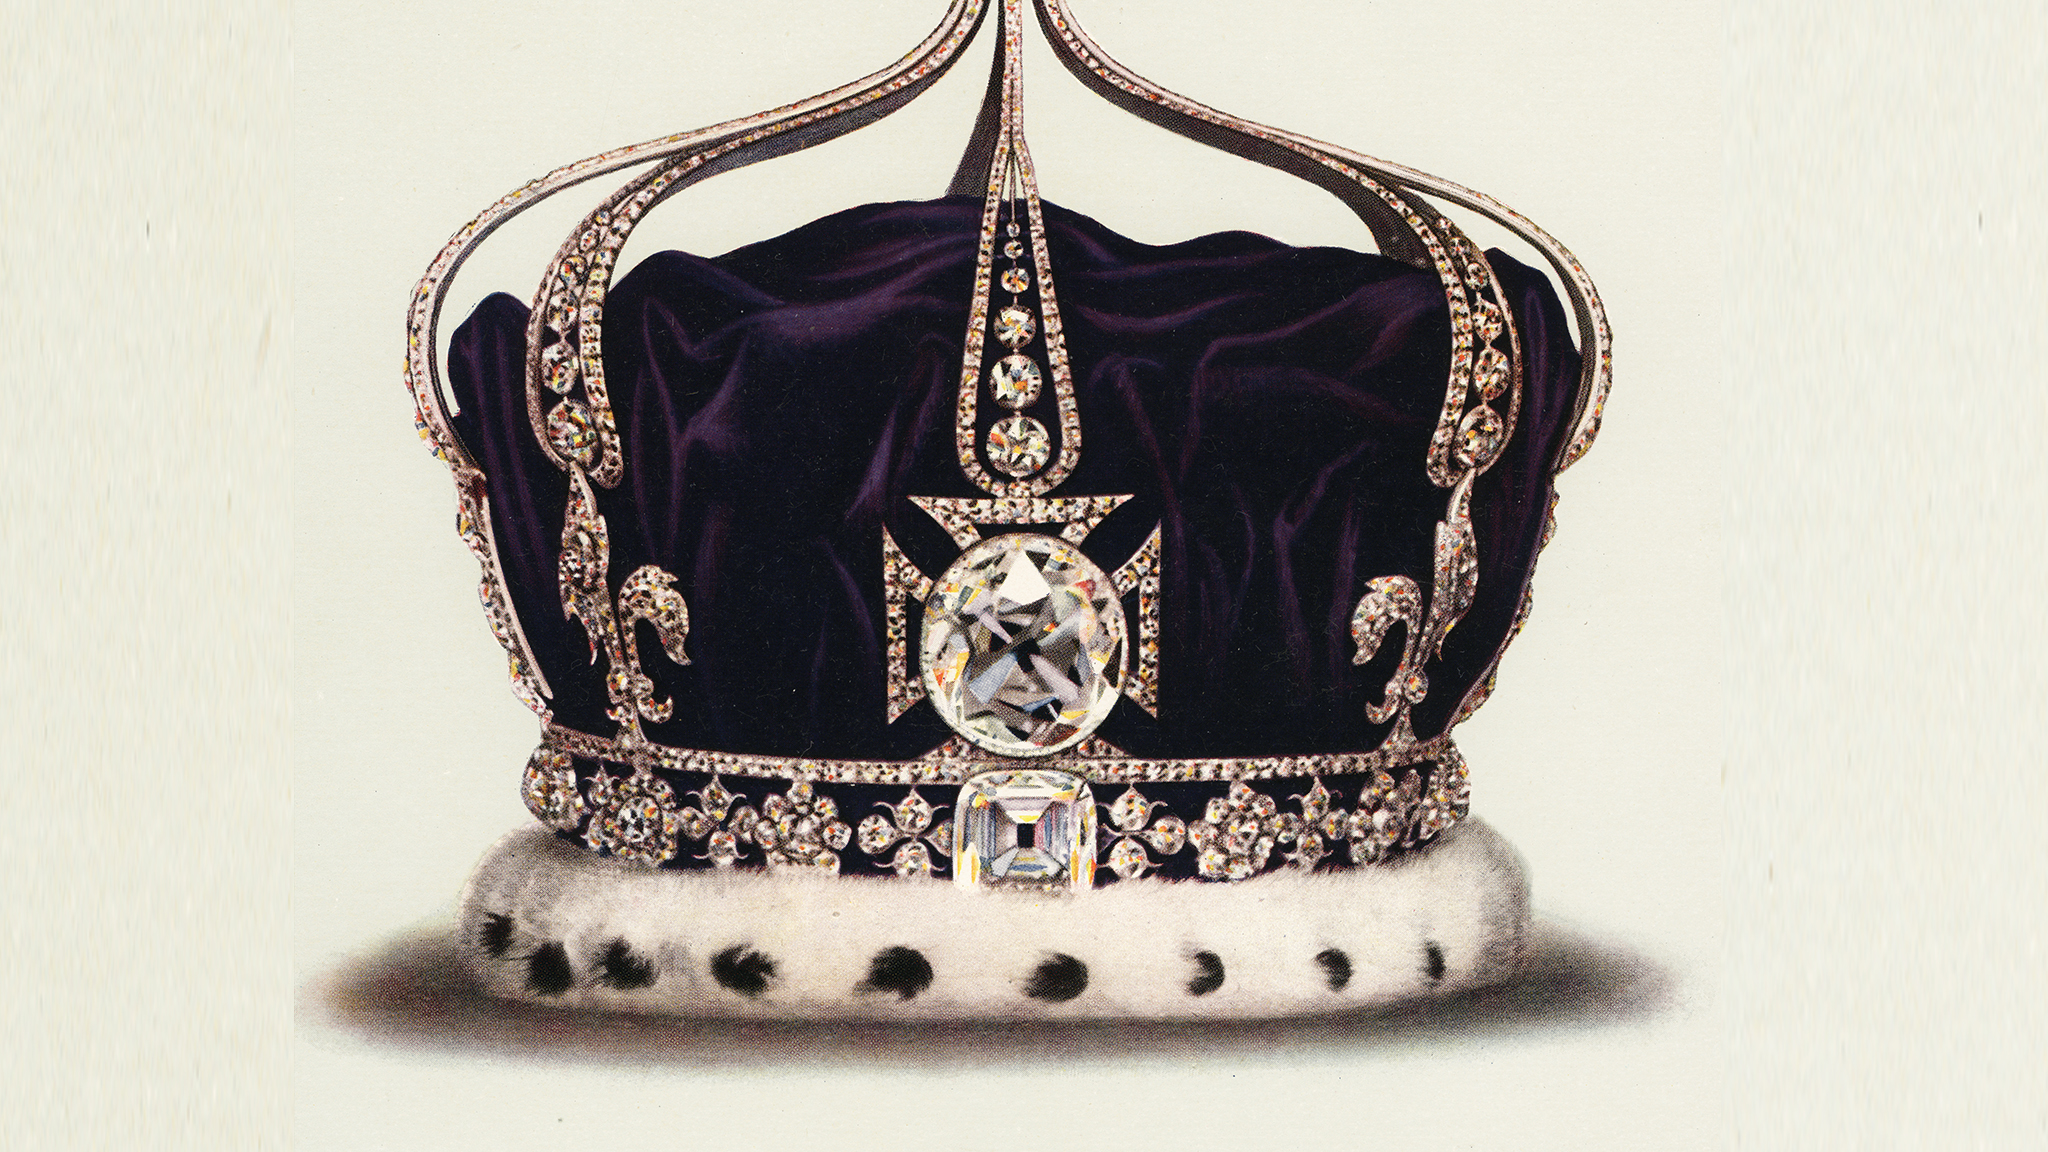 The Koh I Noor - Queen Elizabeth Crown Kohinoor , HD Wallpaper & Backgrounds